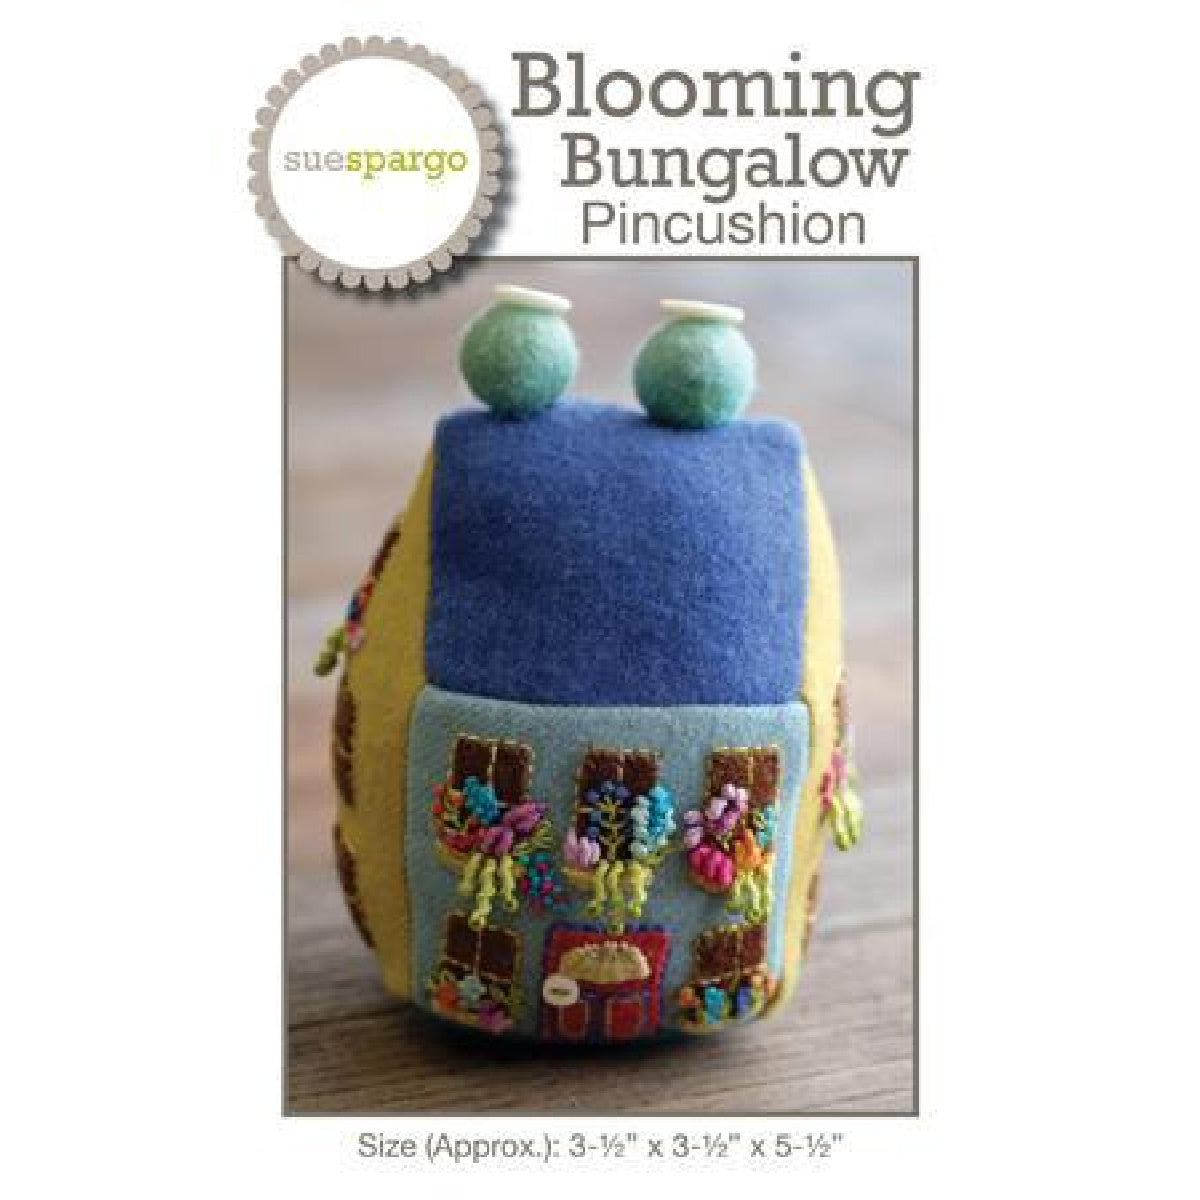 Blooming Bungalow Pincushion Pattern